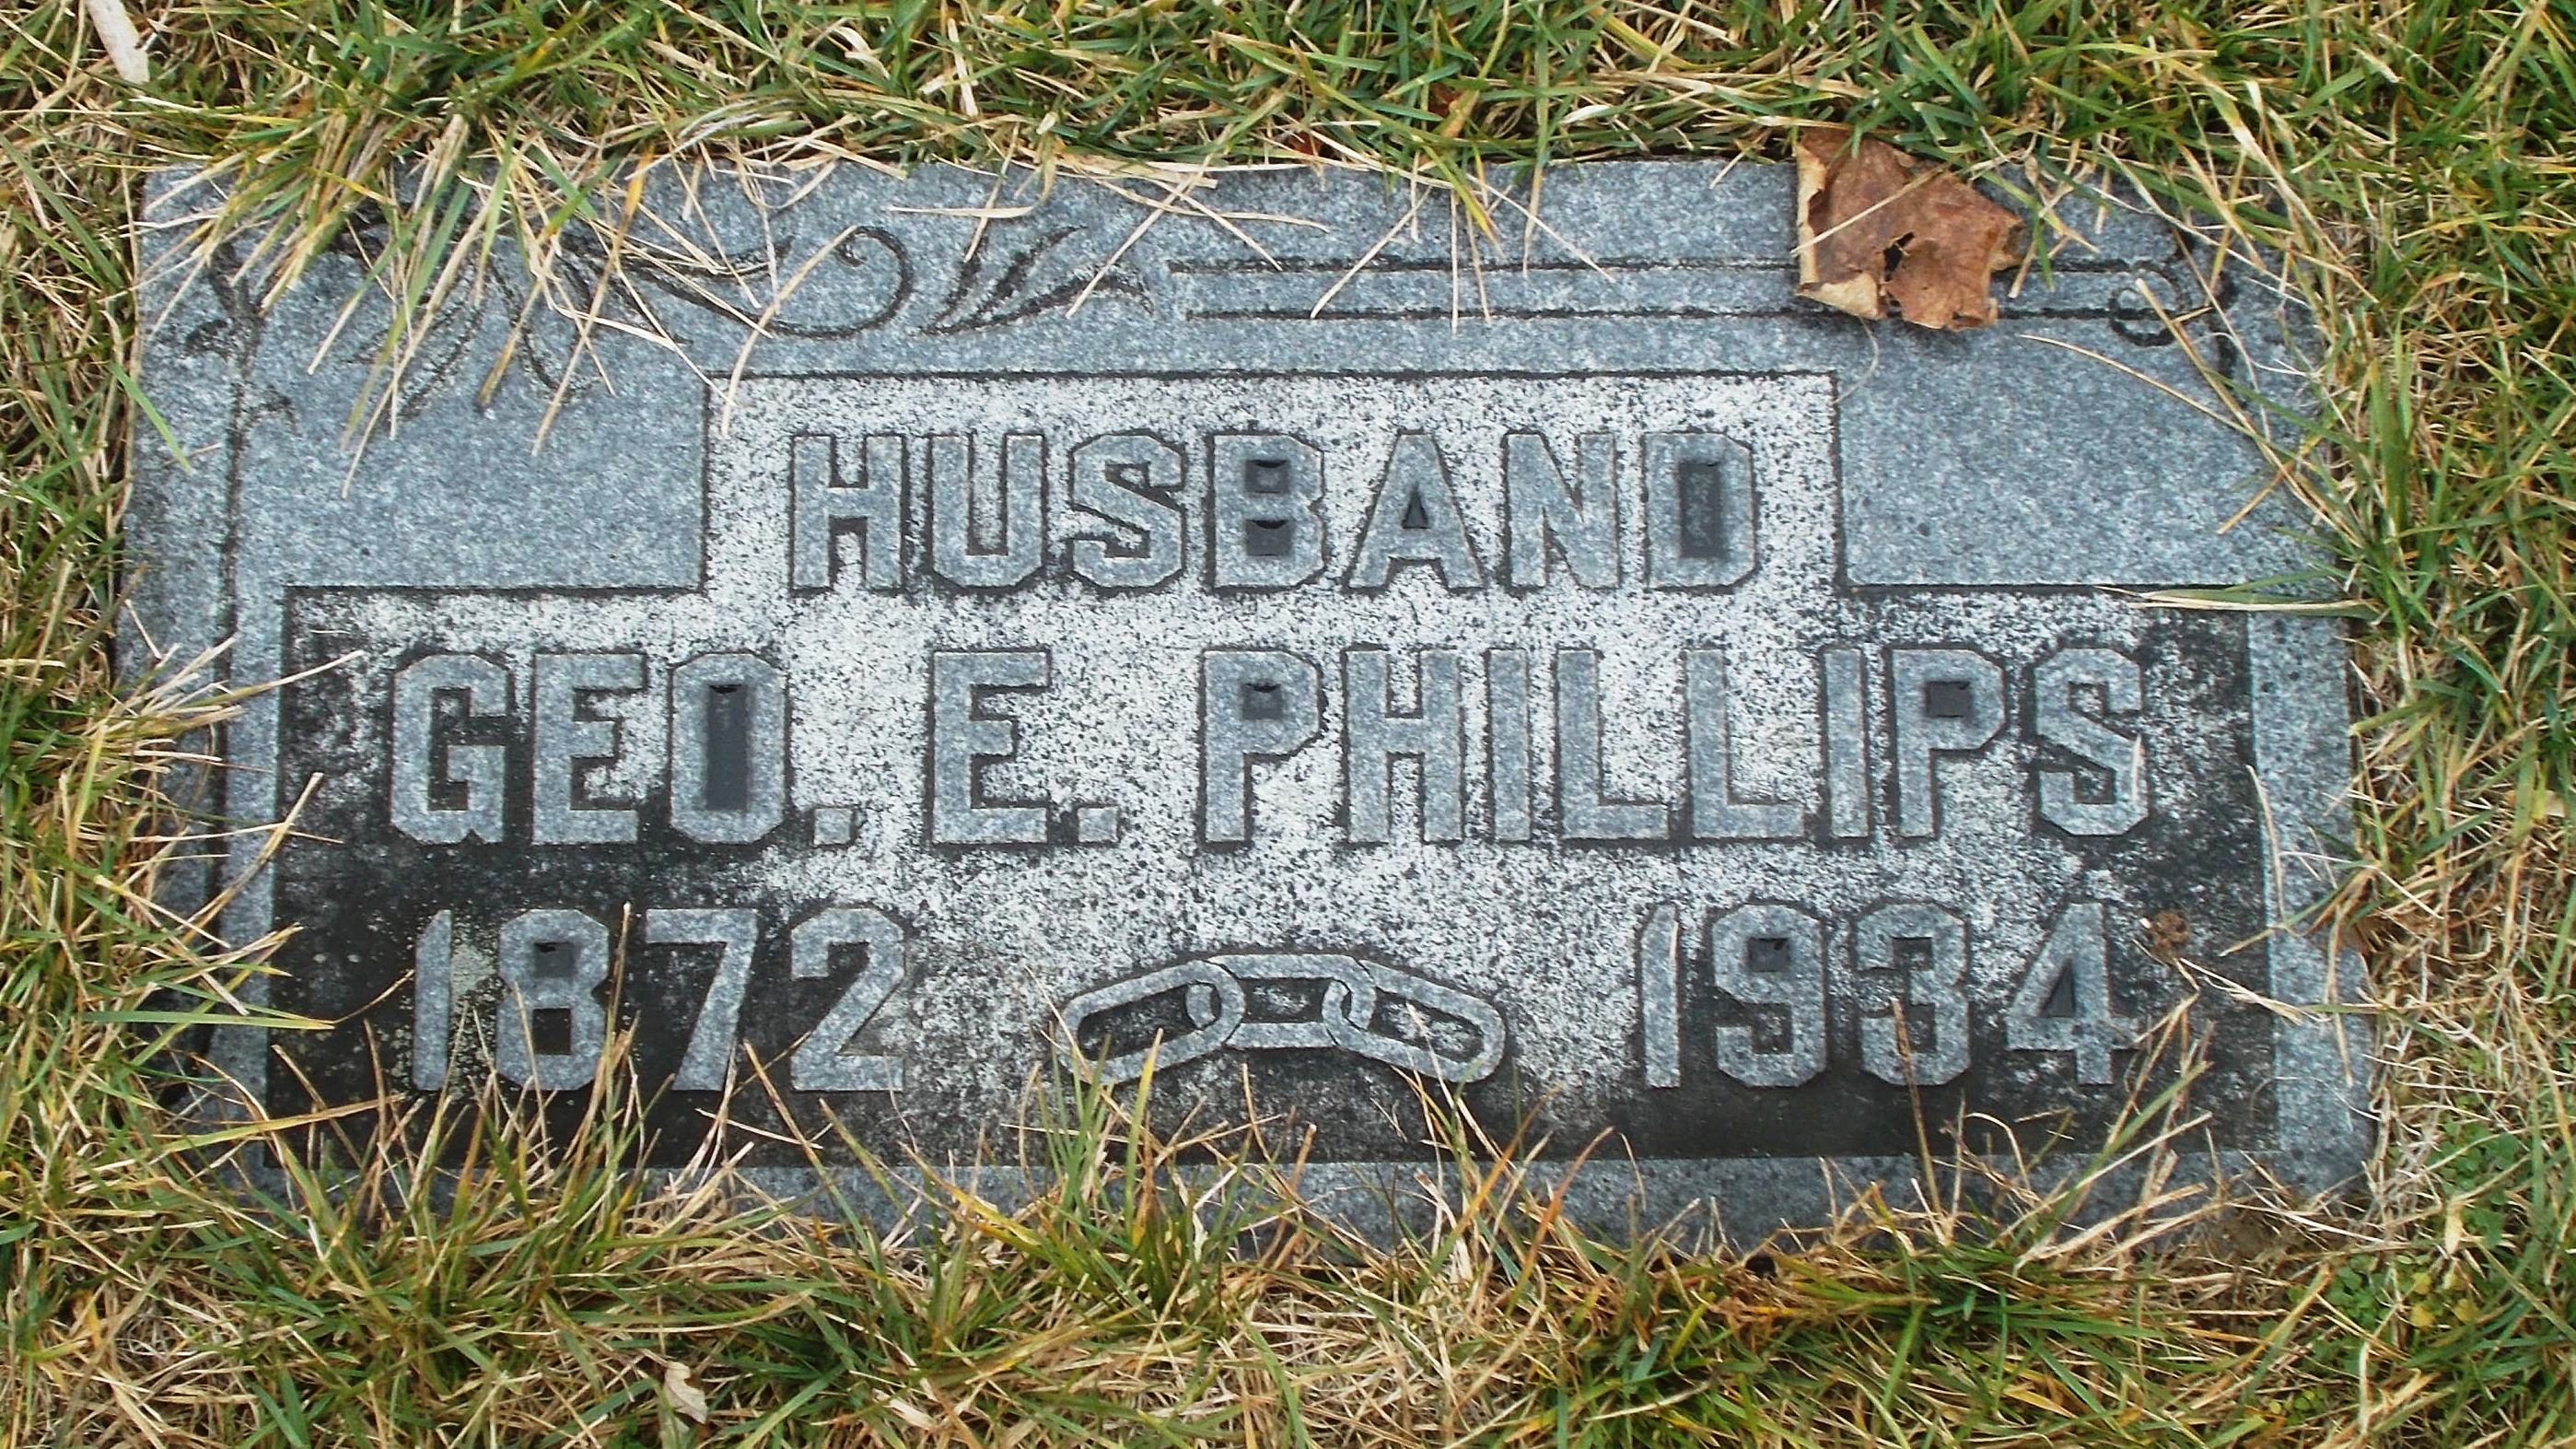 George E Phillips